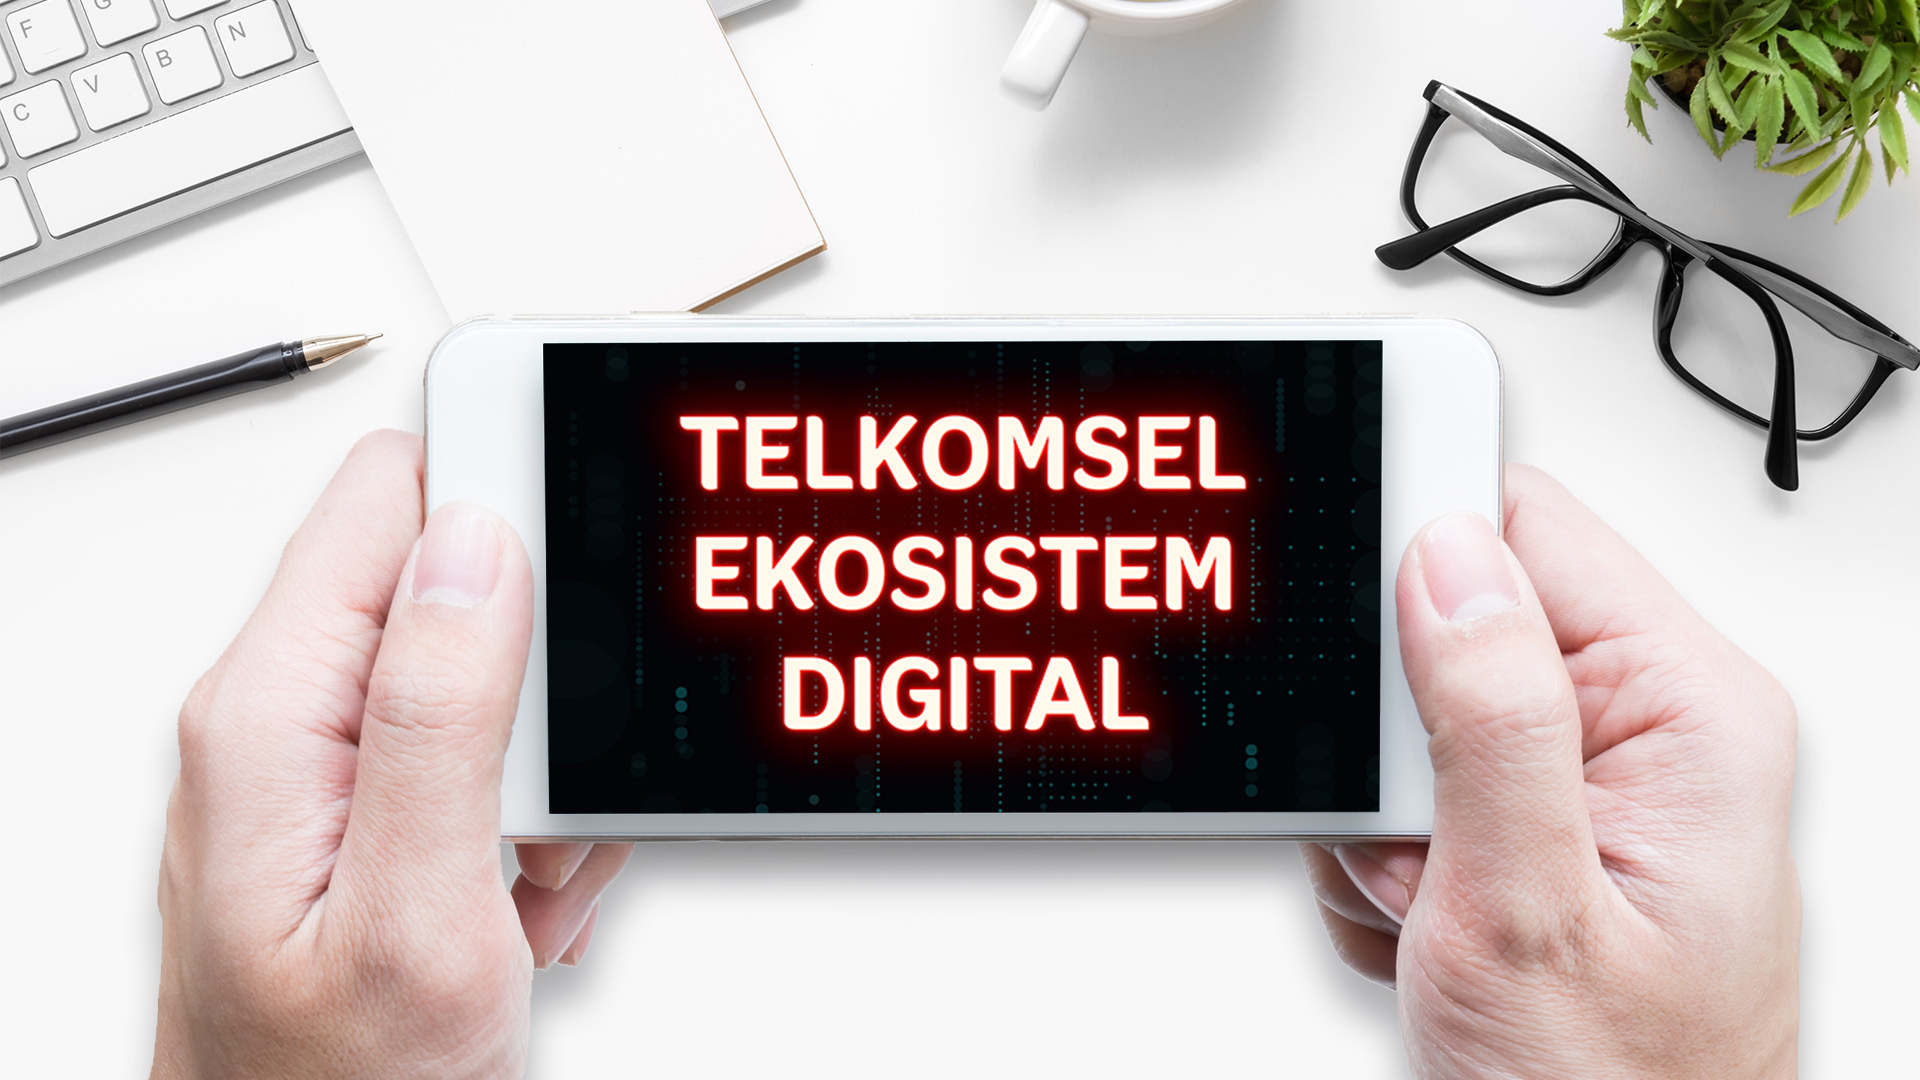 Telkomsel membentuk anak perusahaan, PT Telkomsel Ekosistem Digital, sebagai wujud konsistensi transformasi perusahaan dimana PT Telkomsel Ekosistem Digital akan menjadi holding company yang menaungi beberapa anak perusahaan dari emerging portfolio bisnis